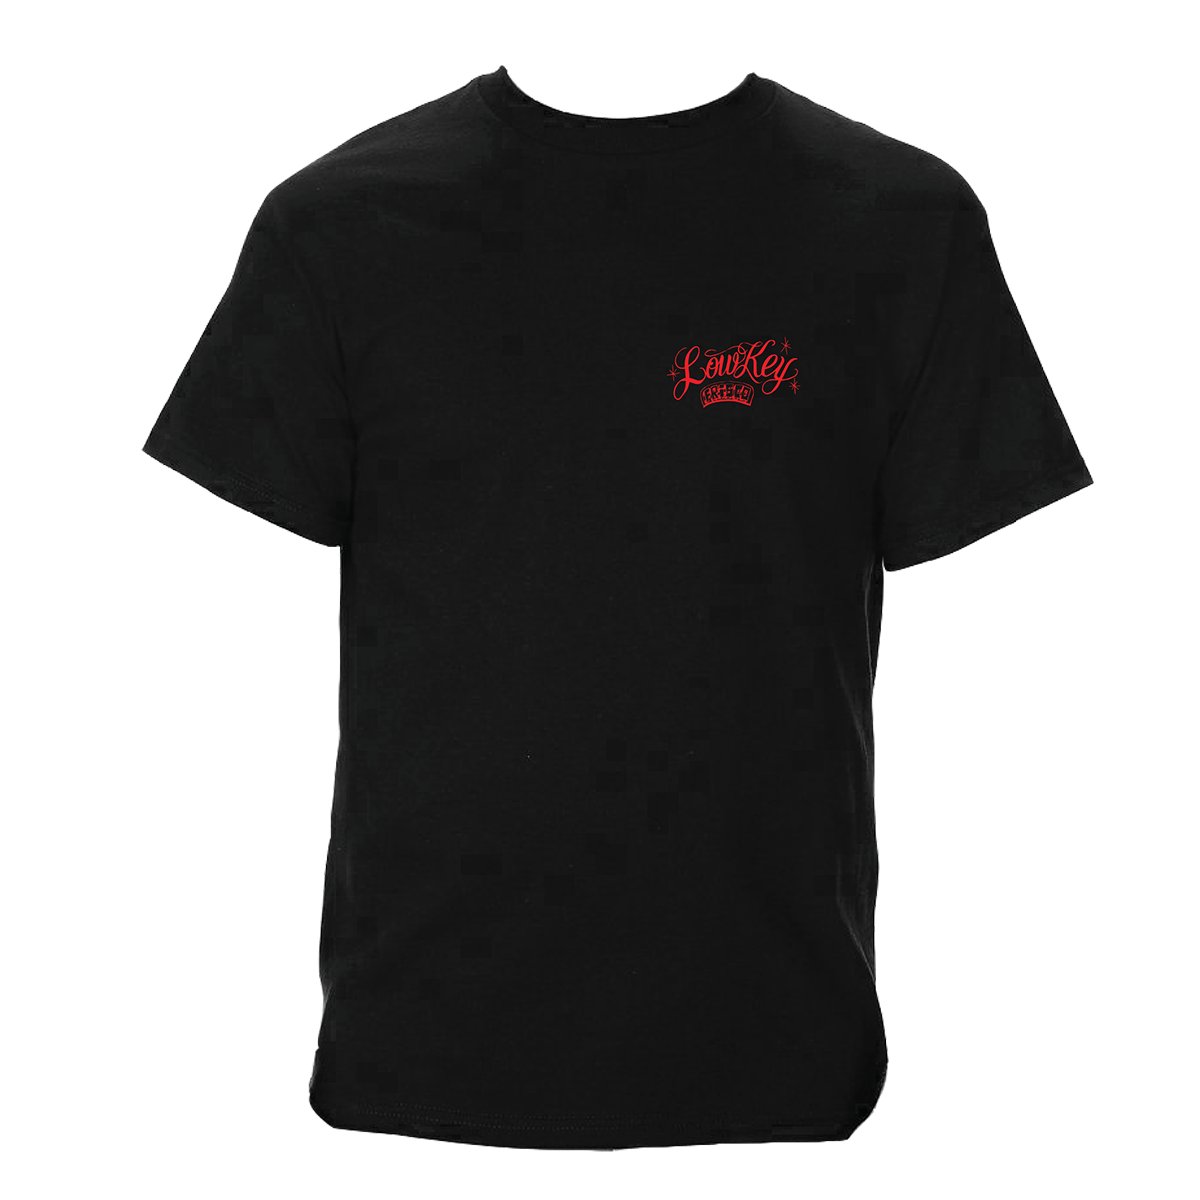 George Crampton x Low Key - Black T-shirt – Low Key Skate Shop